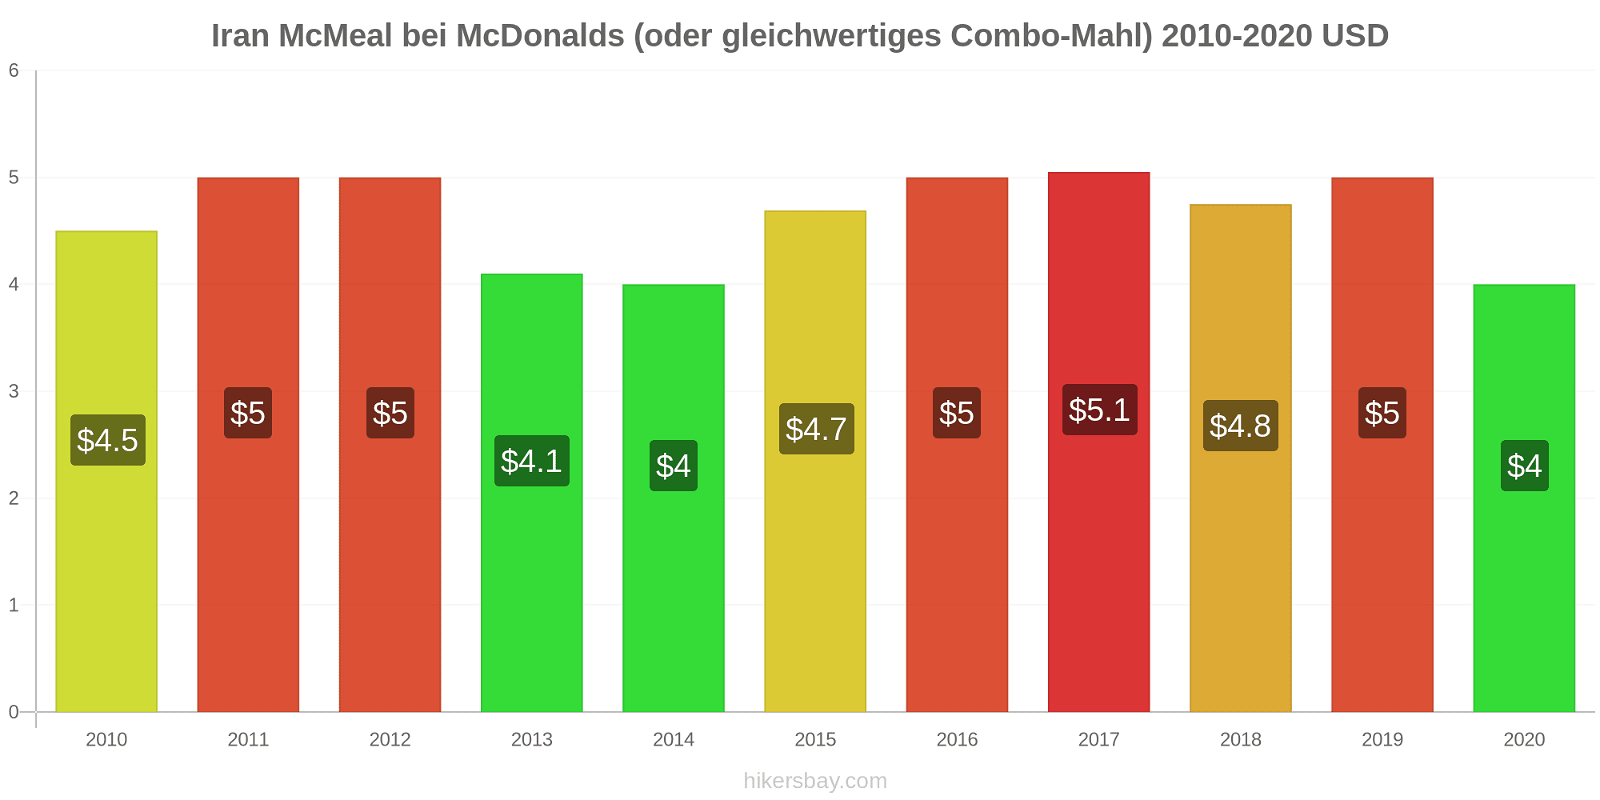 Iran Preisänderungen McMeal bei McDonalds (oder gleichwertige Combo Meal) hikersbay.com